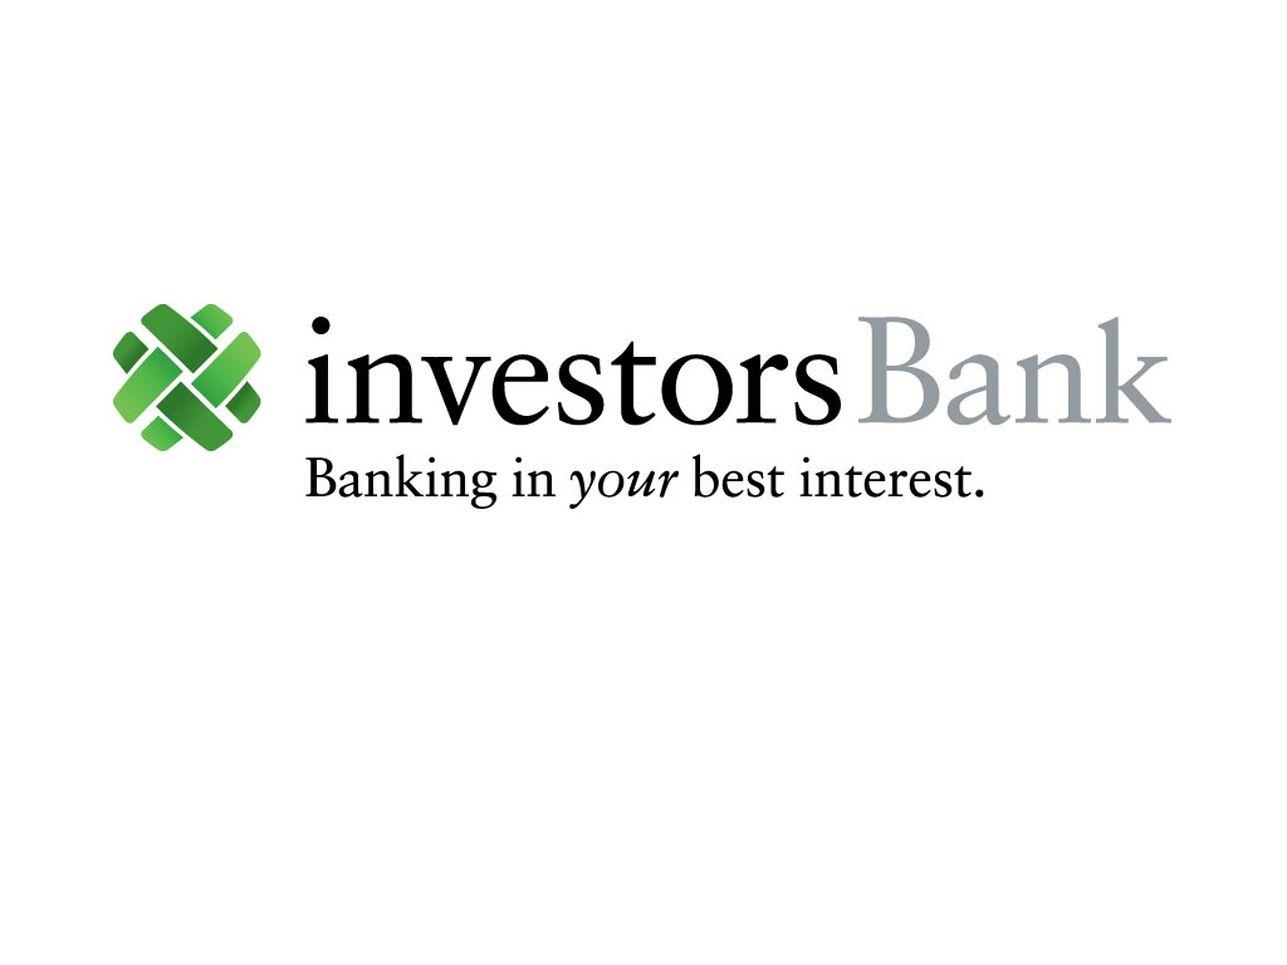 Investors Bank Logo - Investors Bank Rebranding